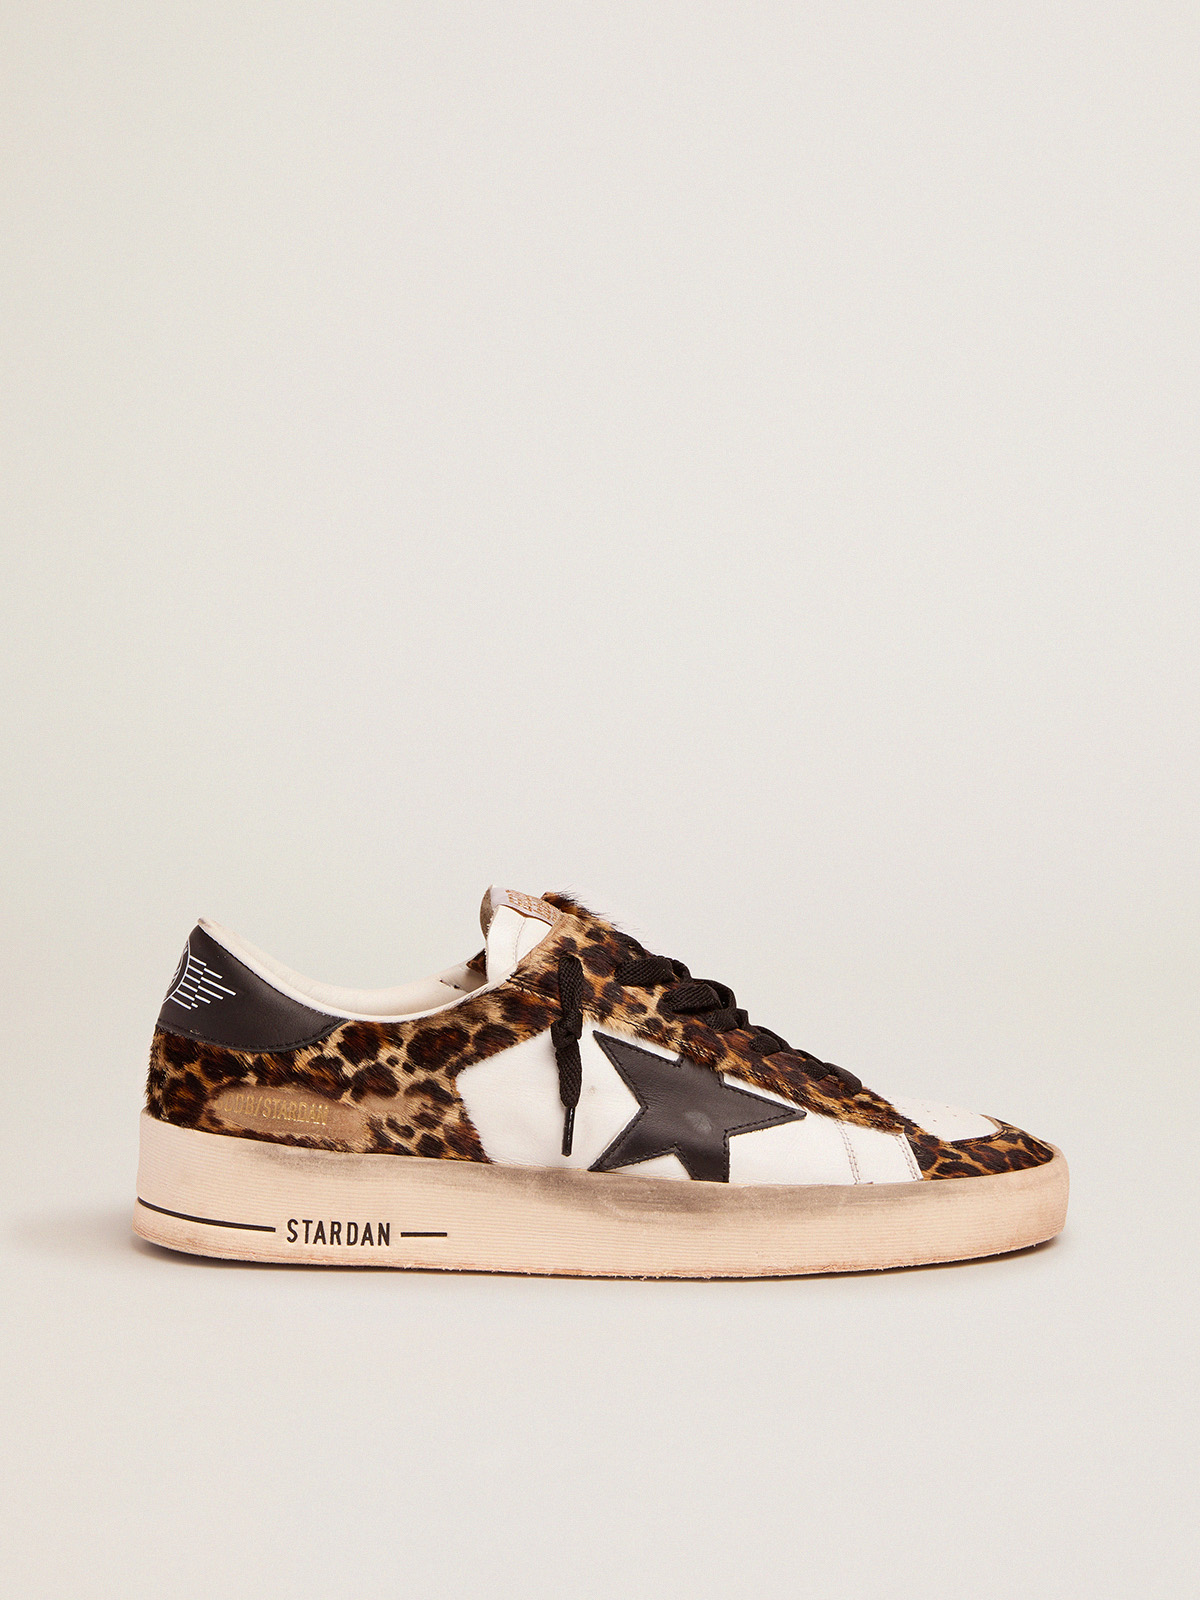 Stardan sneakers in leopard-print pony skin and black star